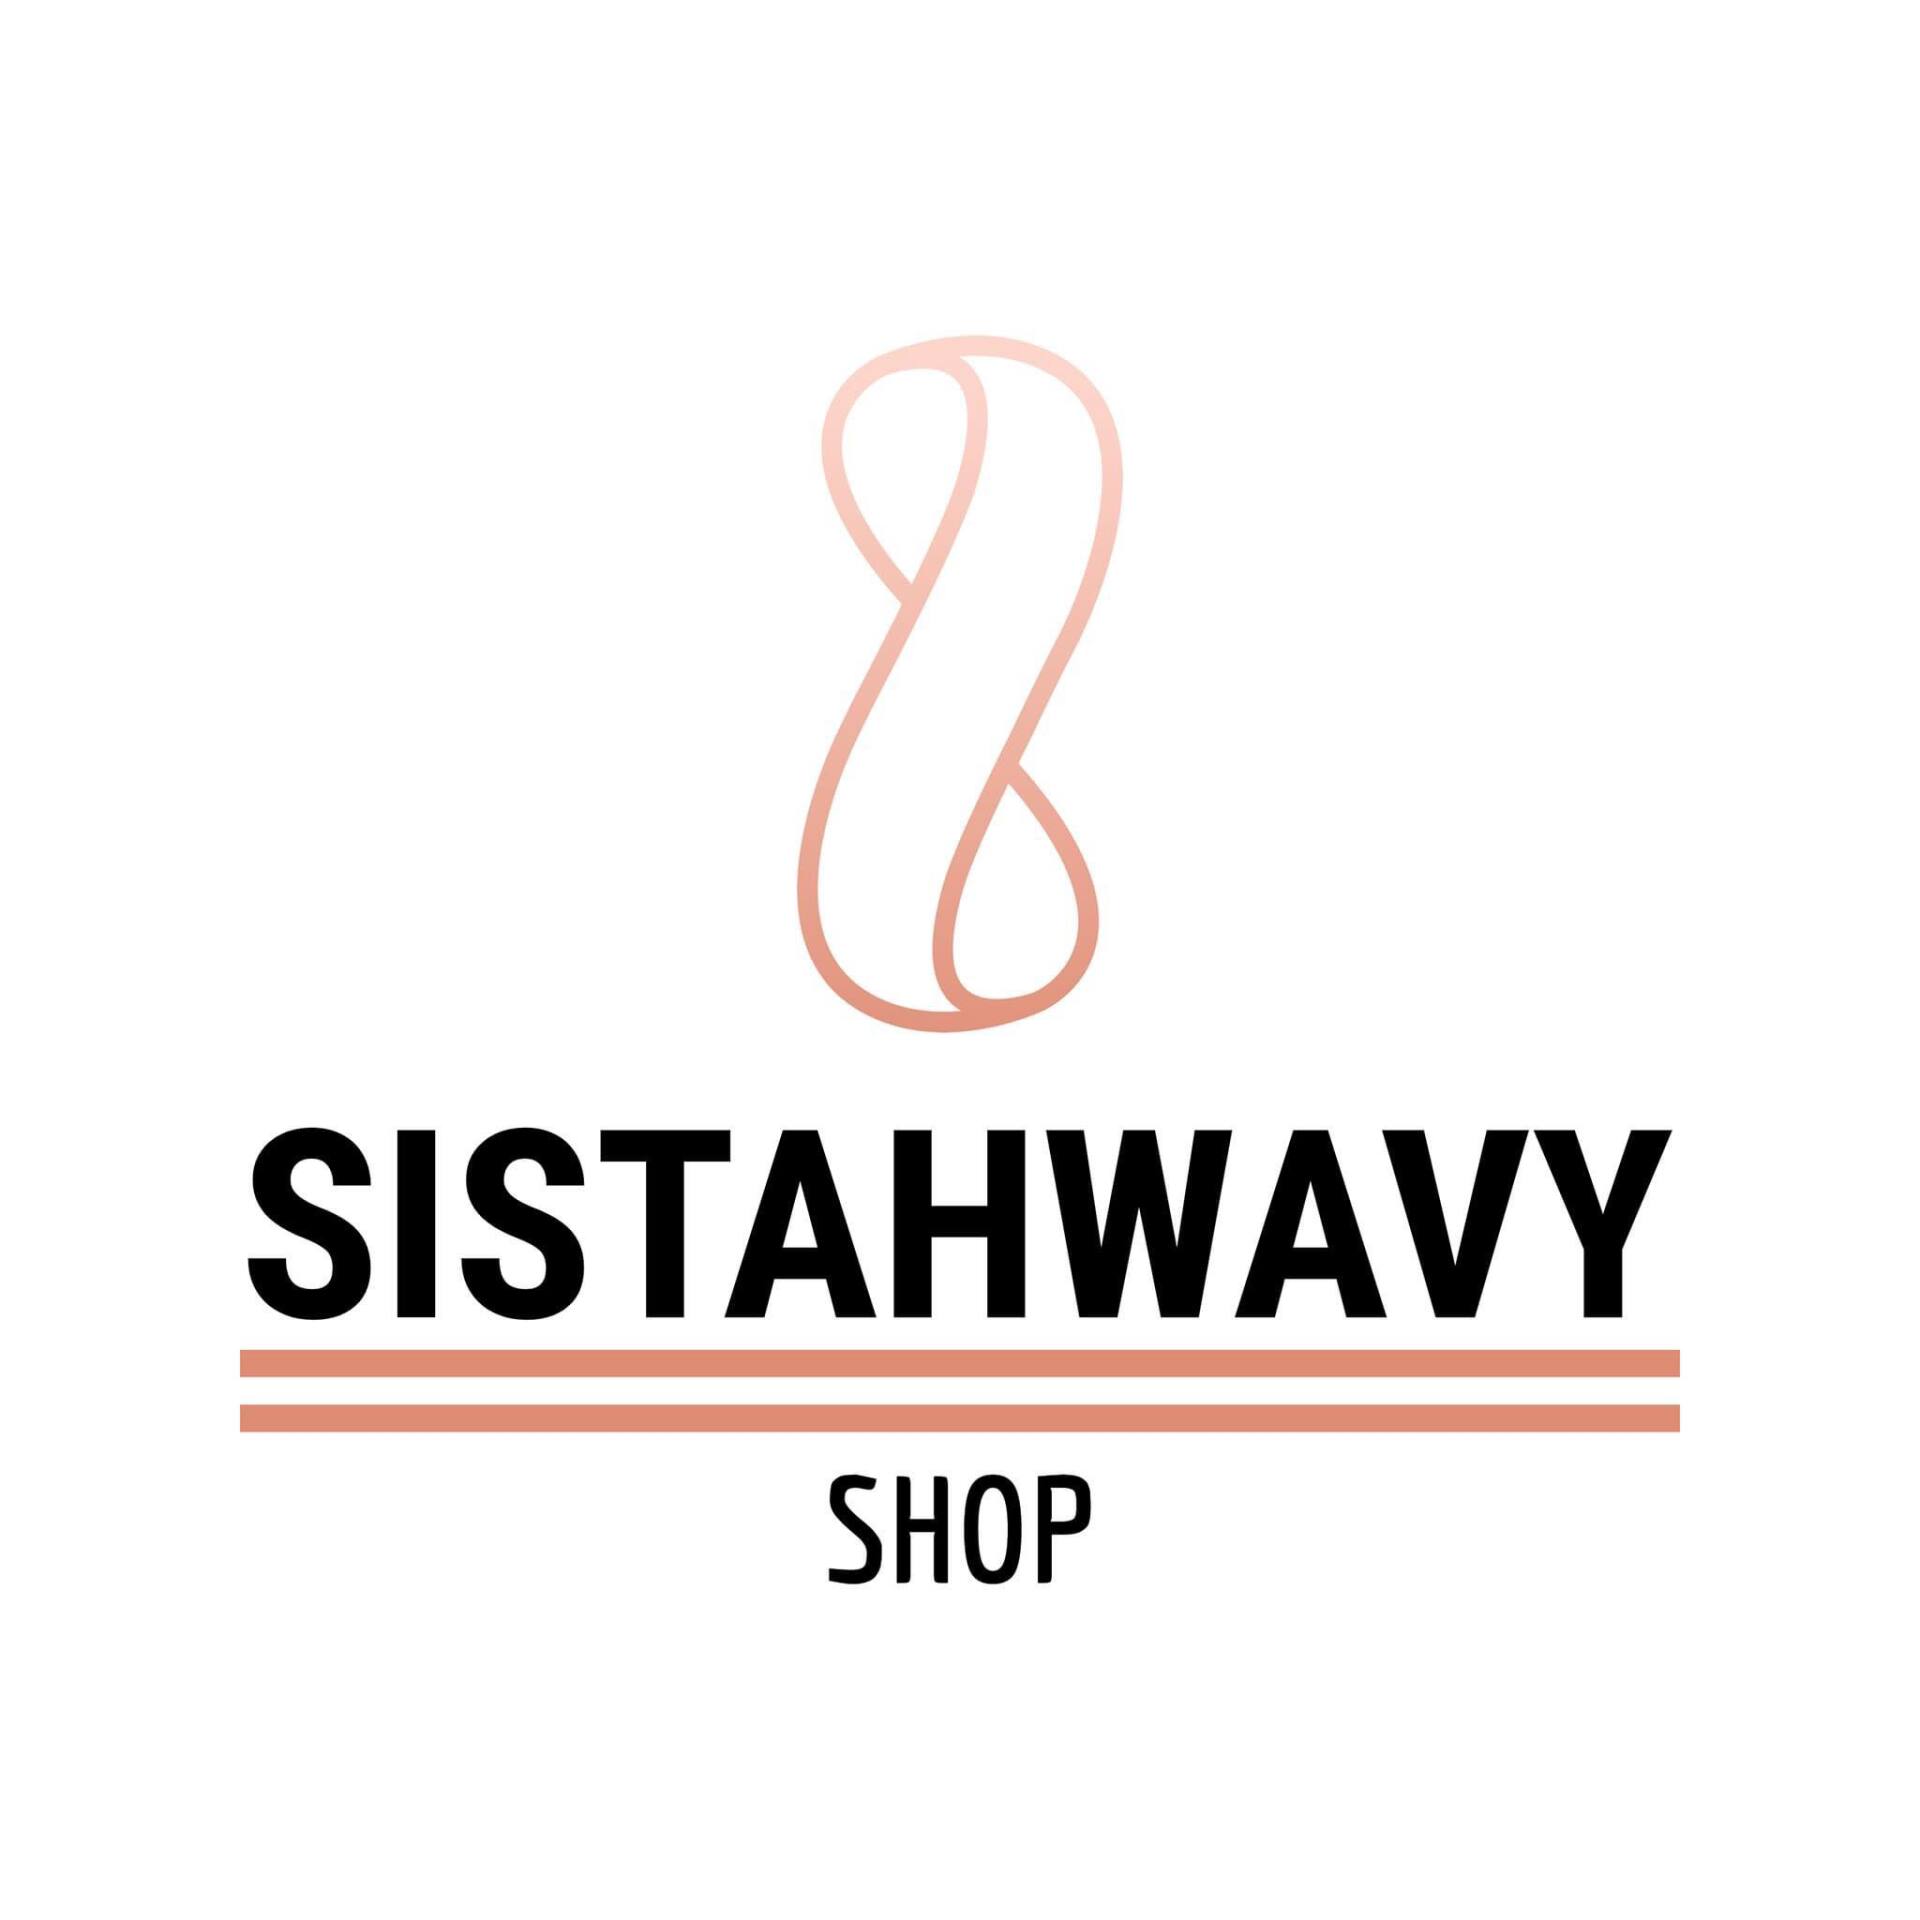 Sistahwavy Shop